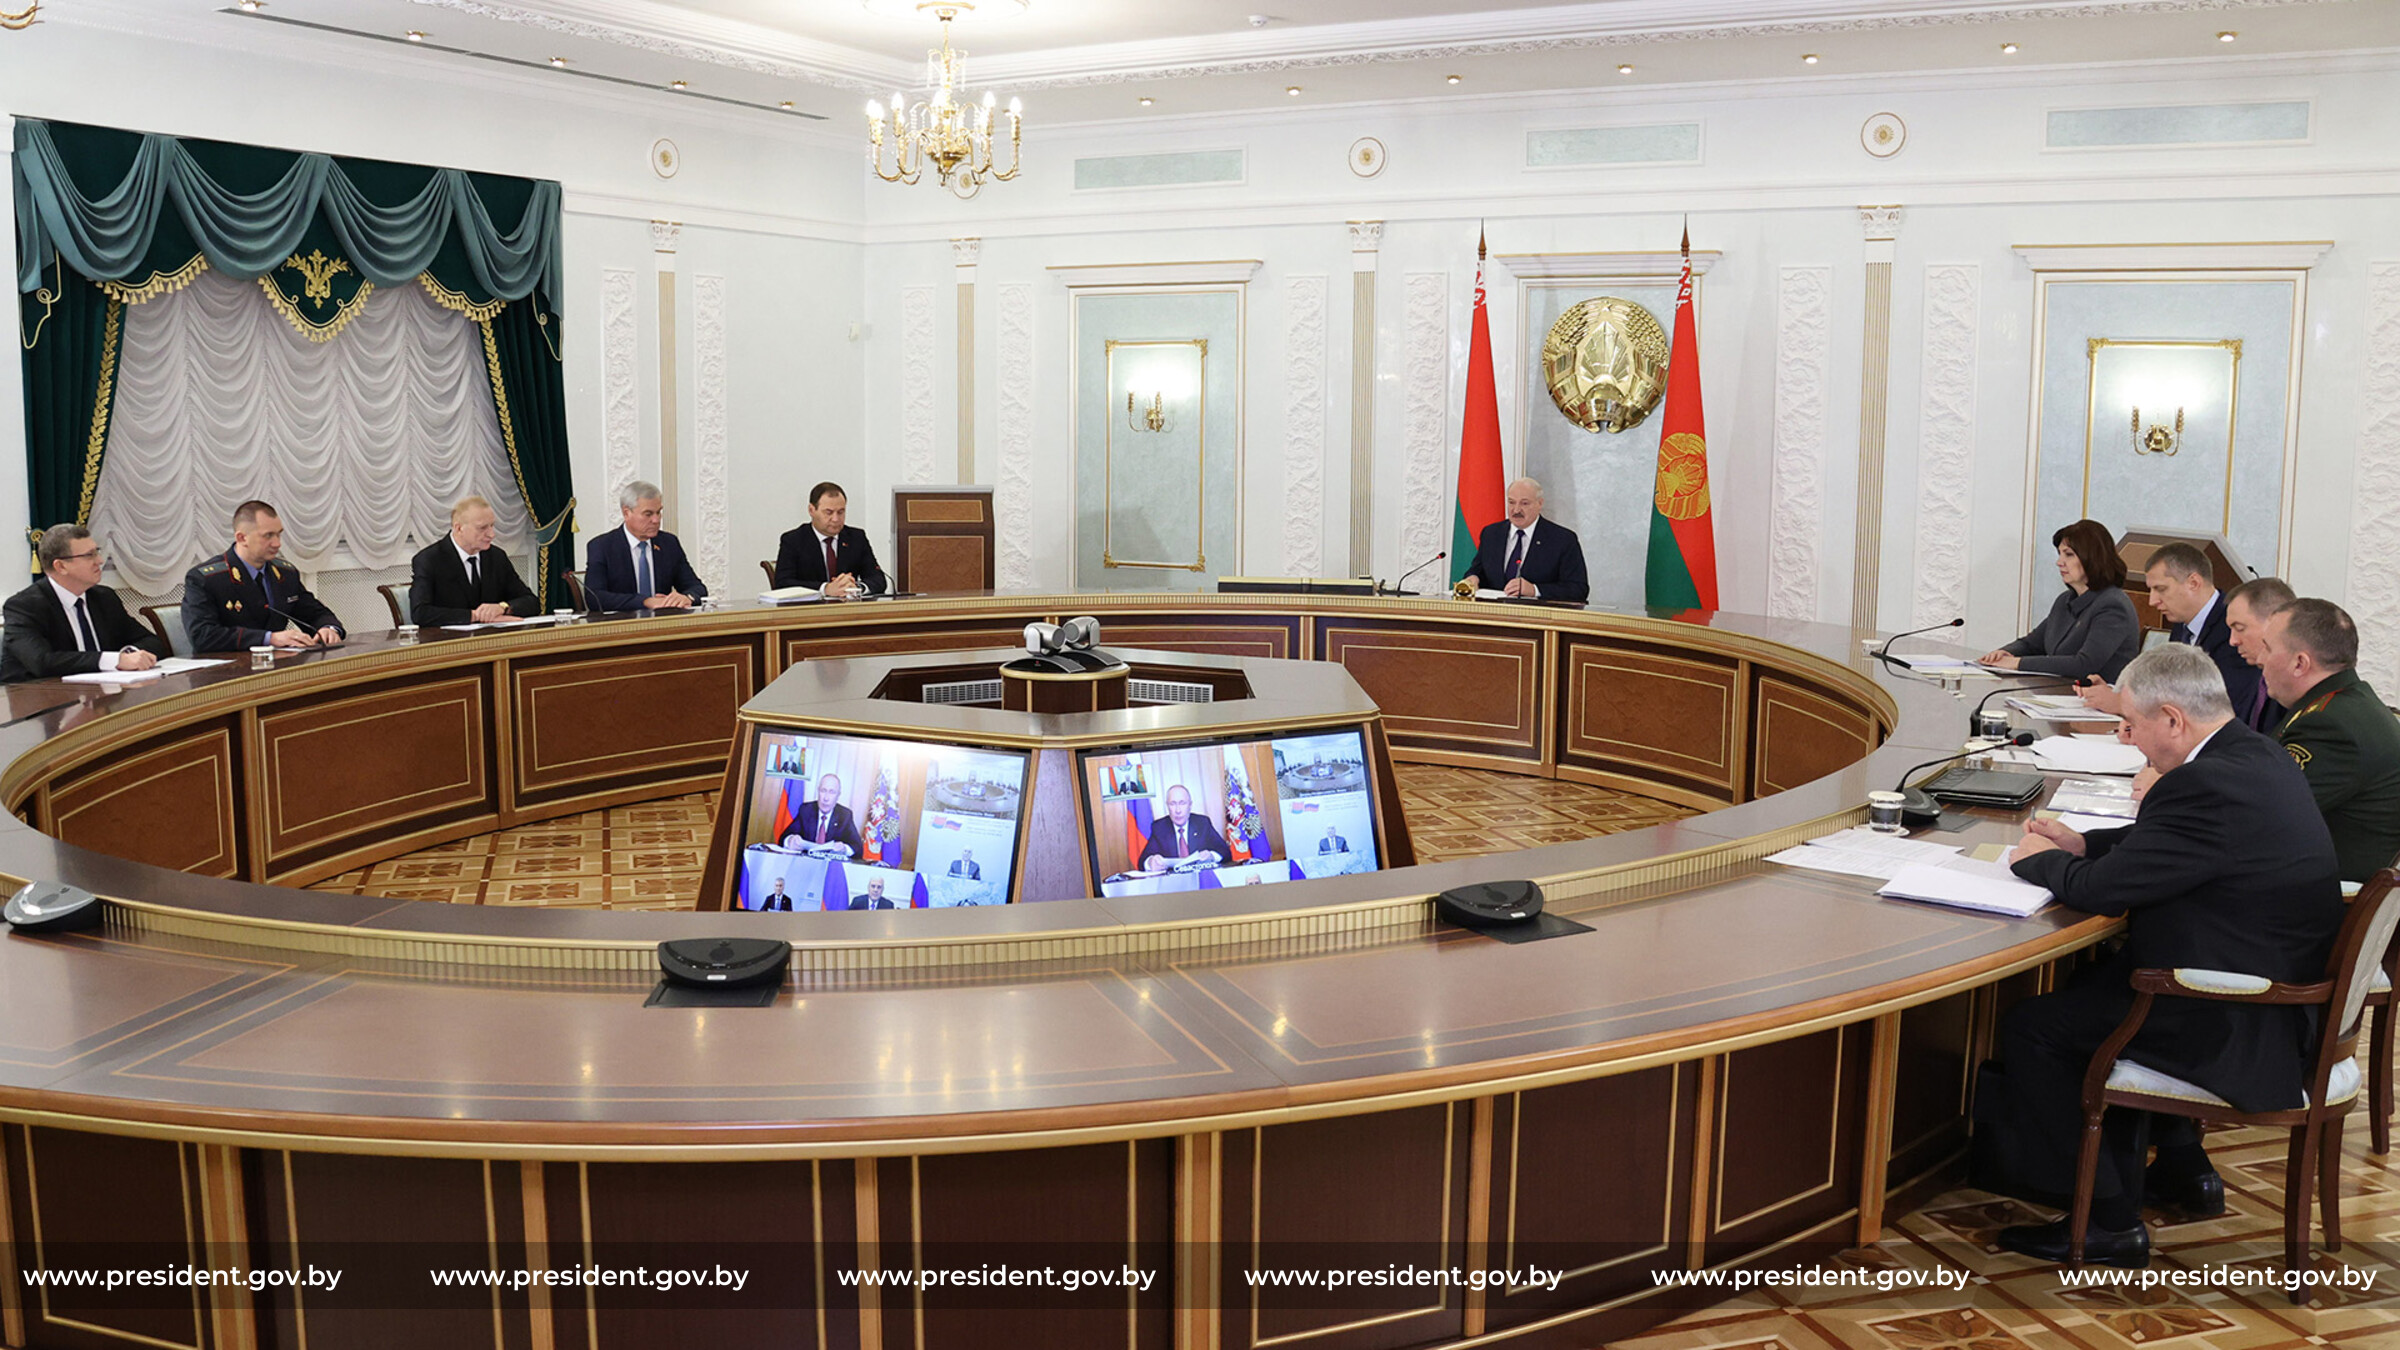 Лукашенко подписал указ о военном времени. Заседание высшего Генсовета Союзного государства.